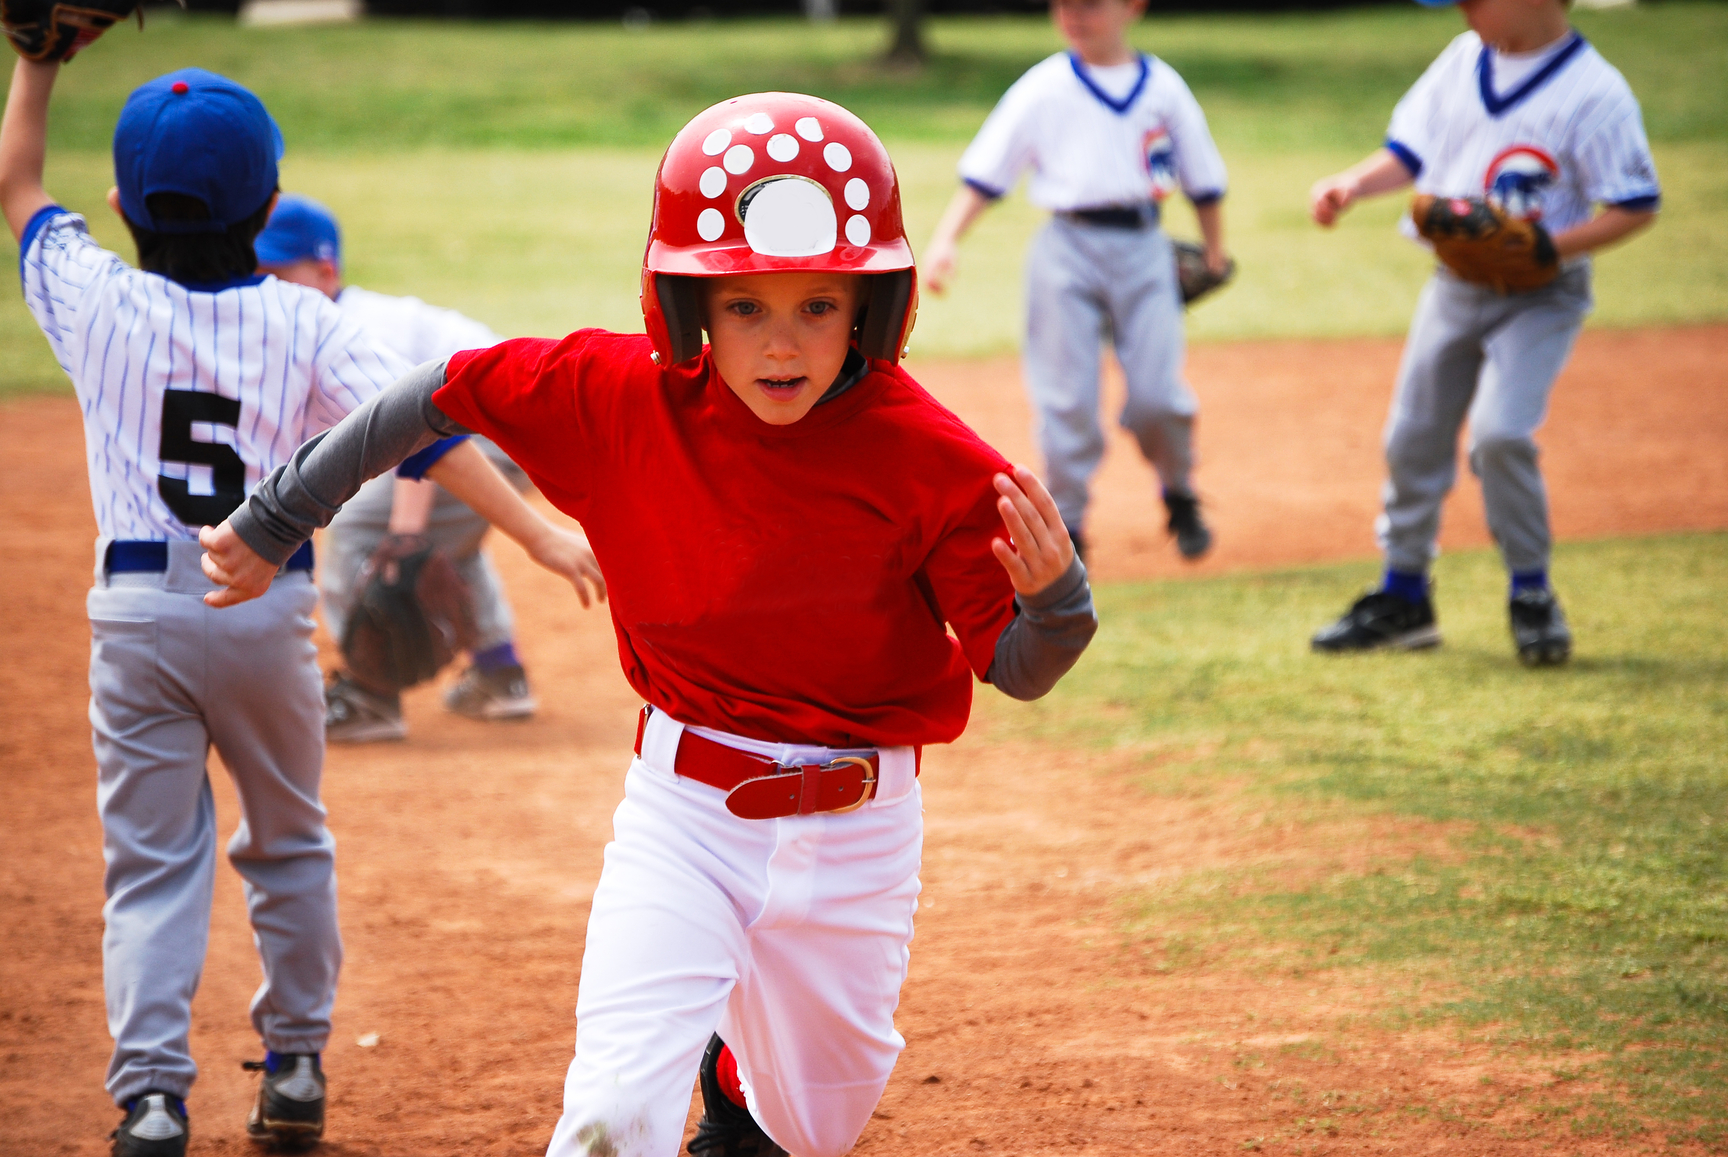 Little league baseball player running bases